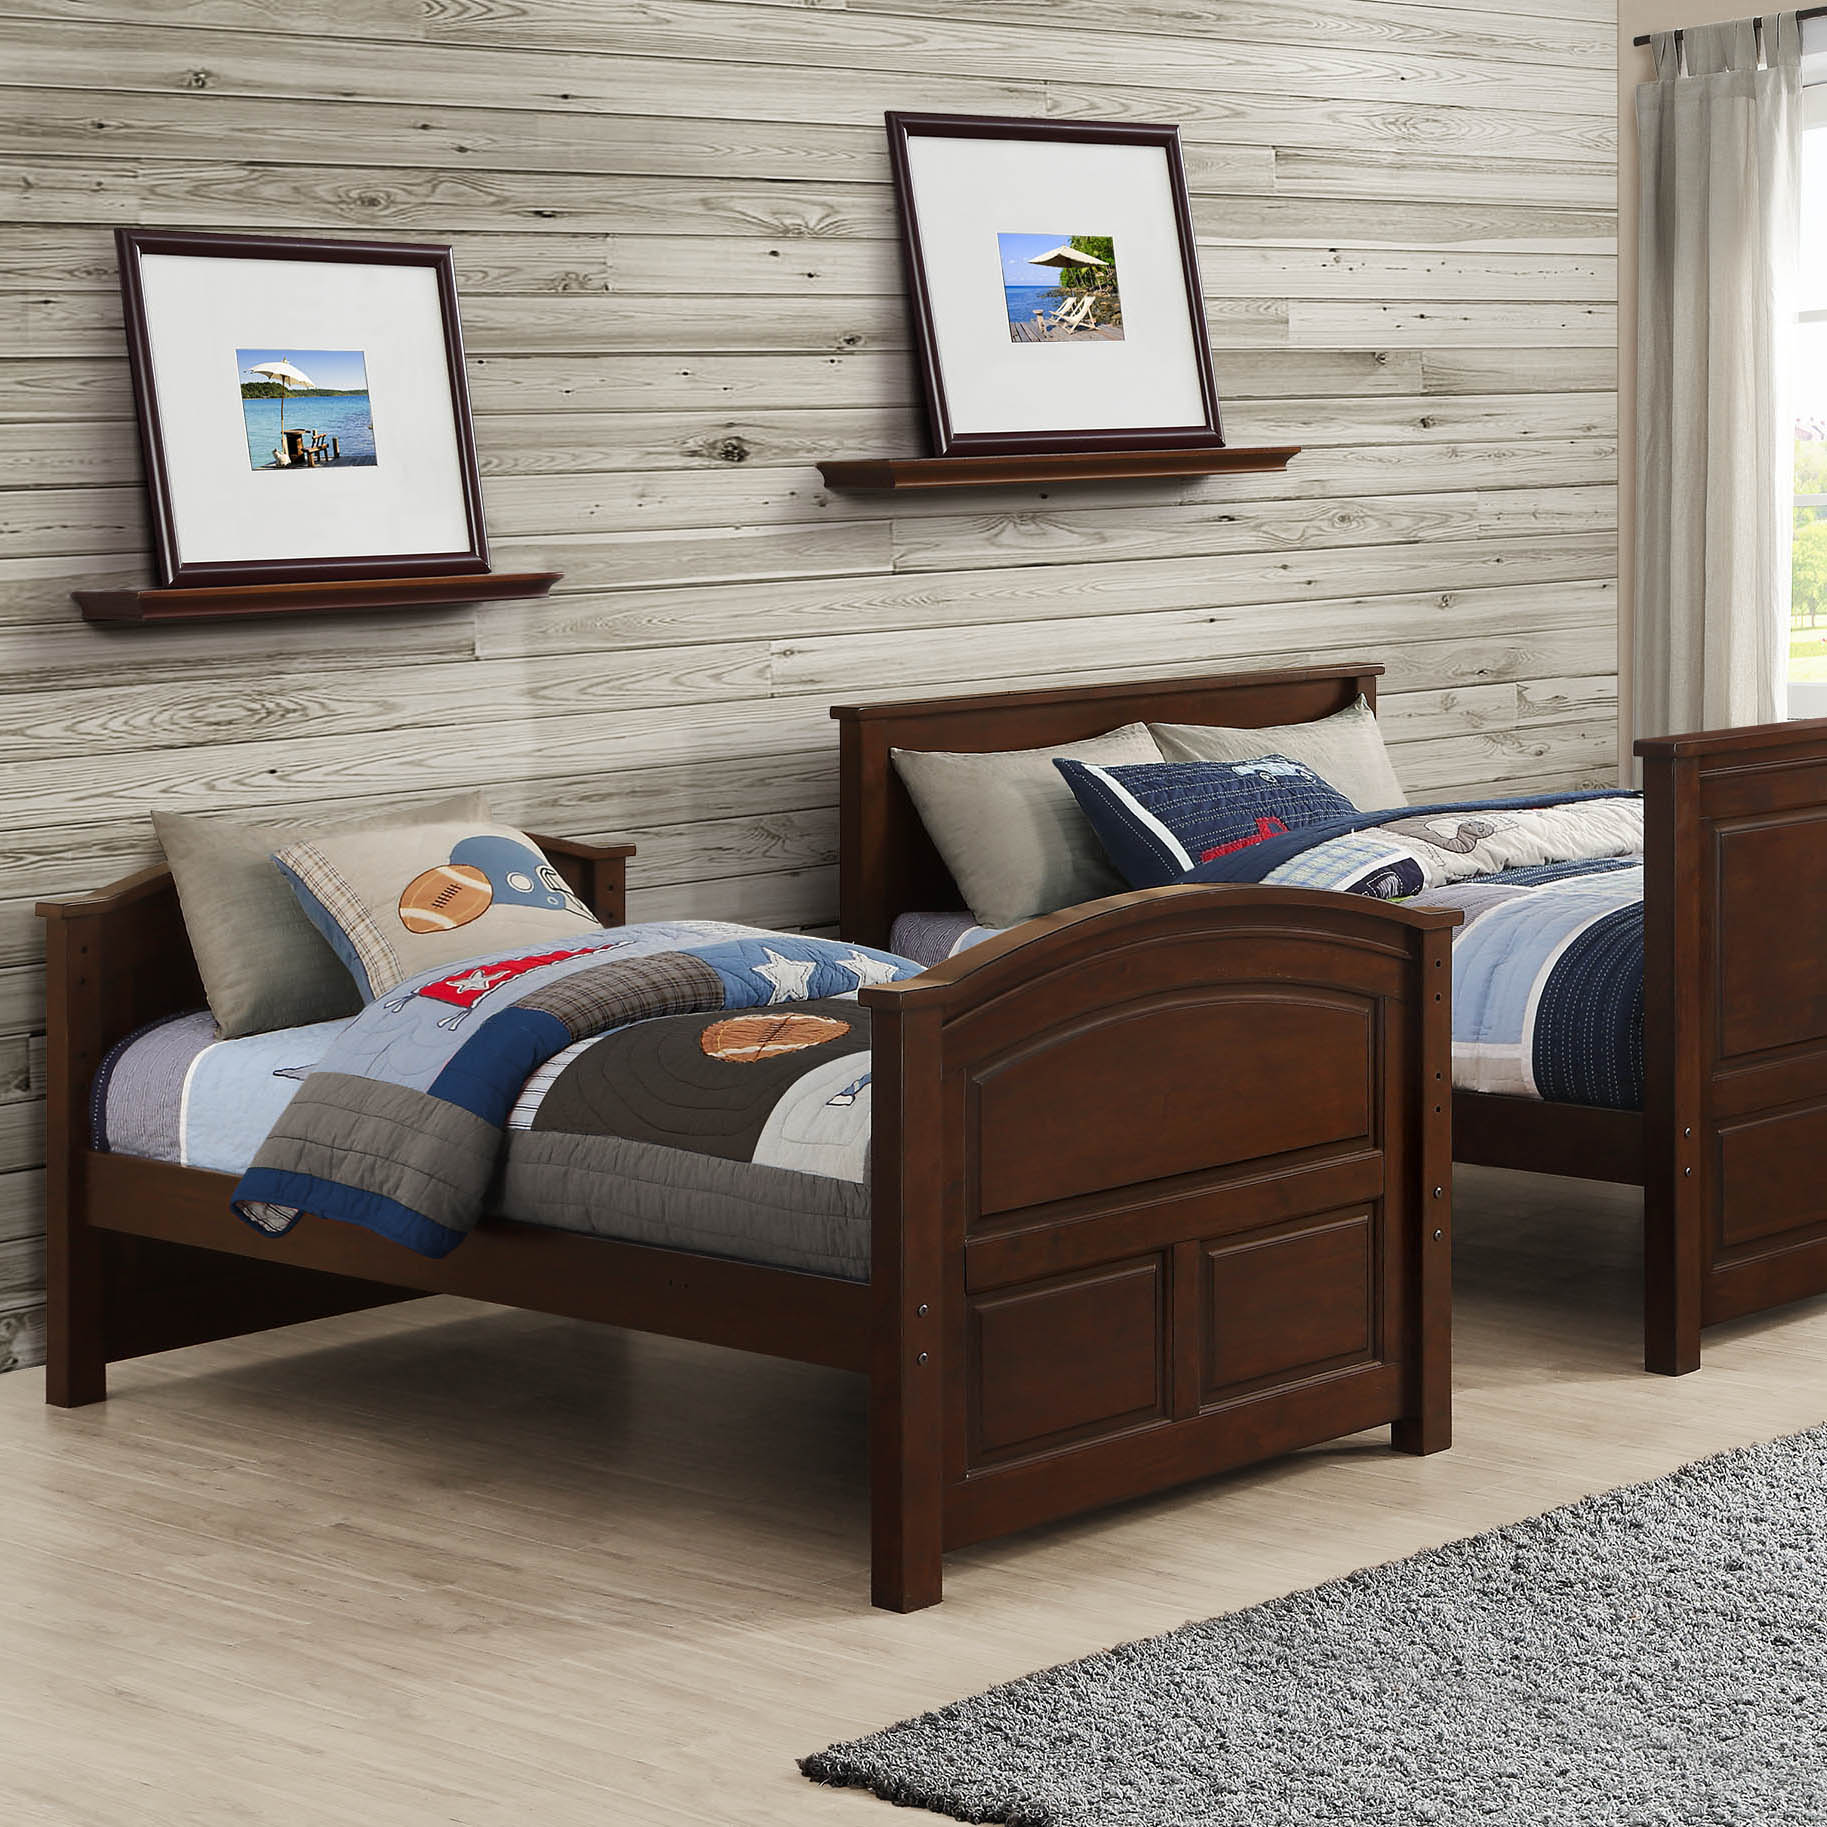 Bayside Furnishings, Bayside Furnishings Bunk Bed Costco